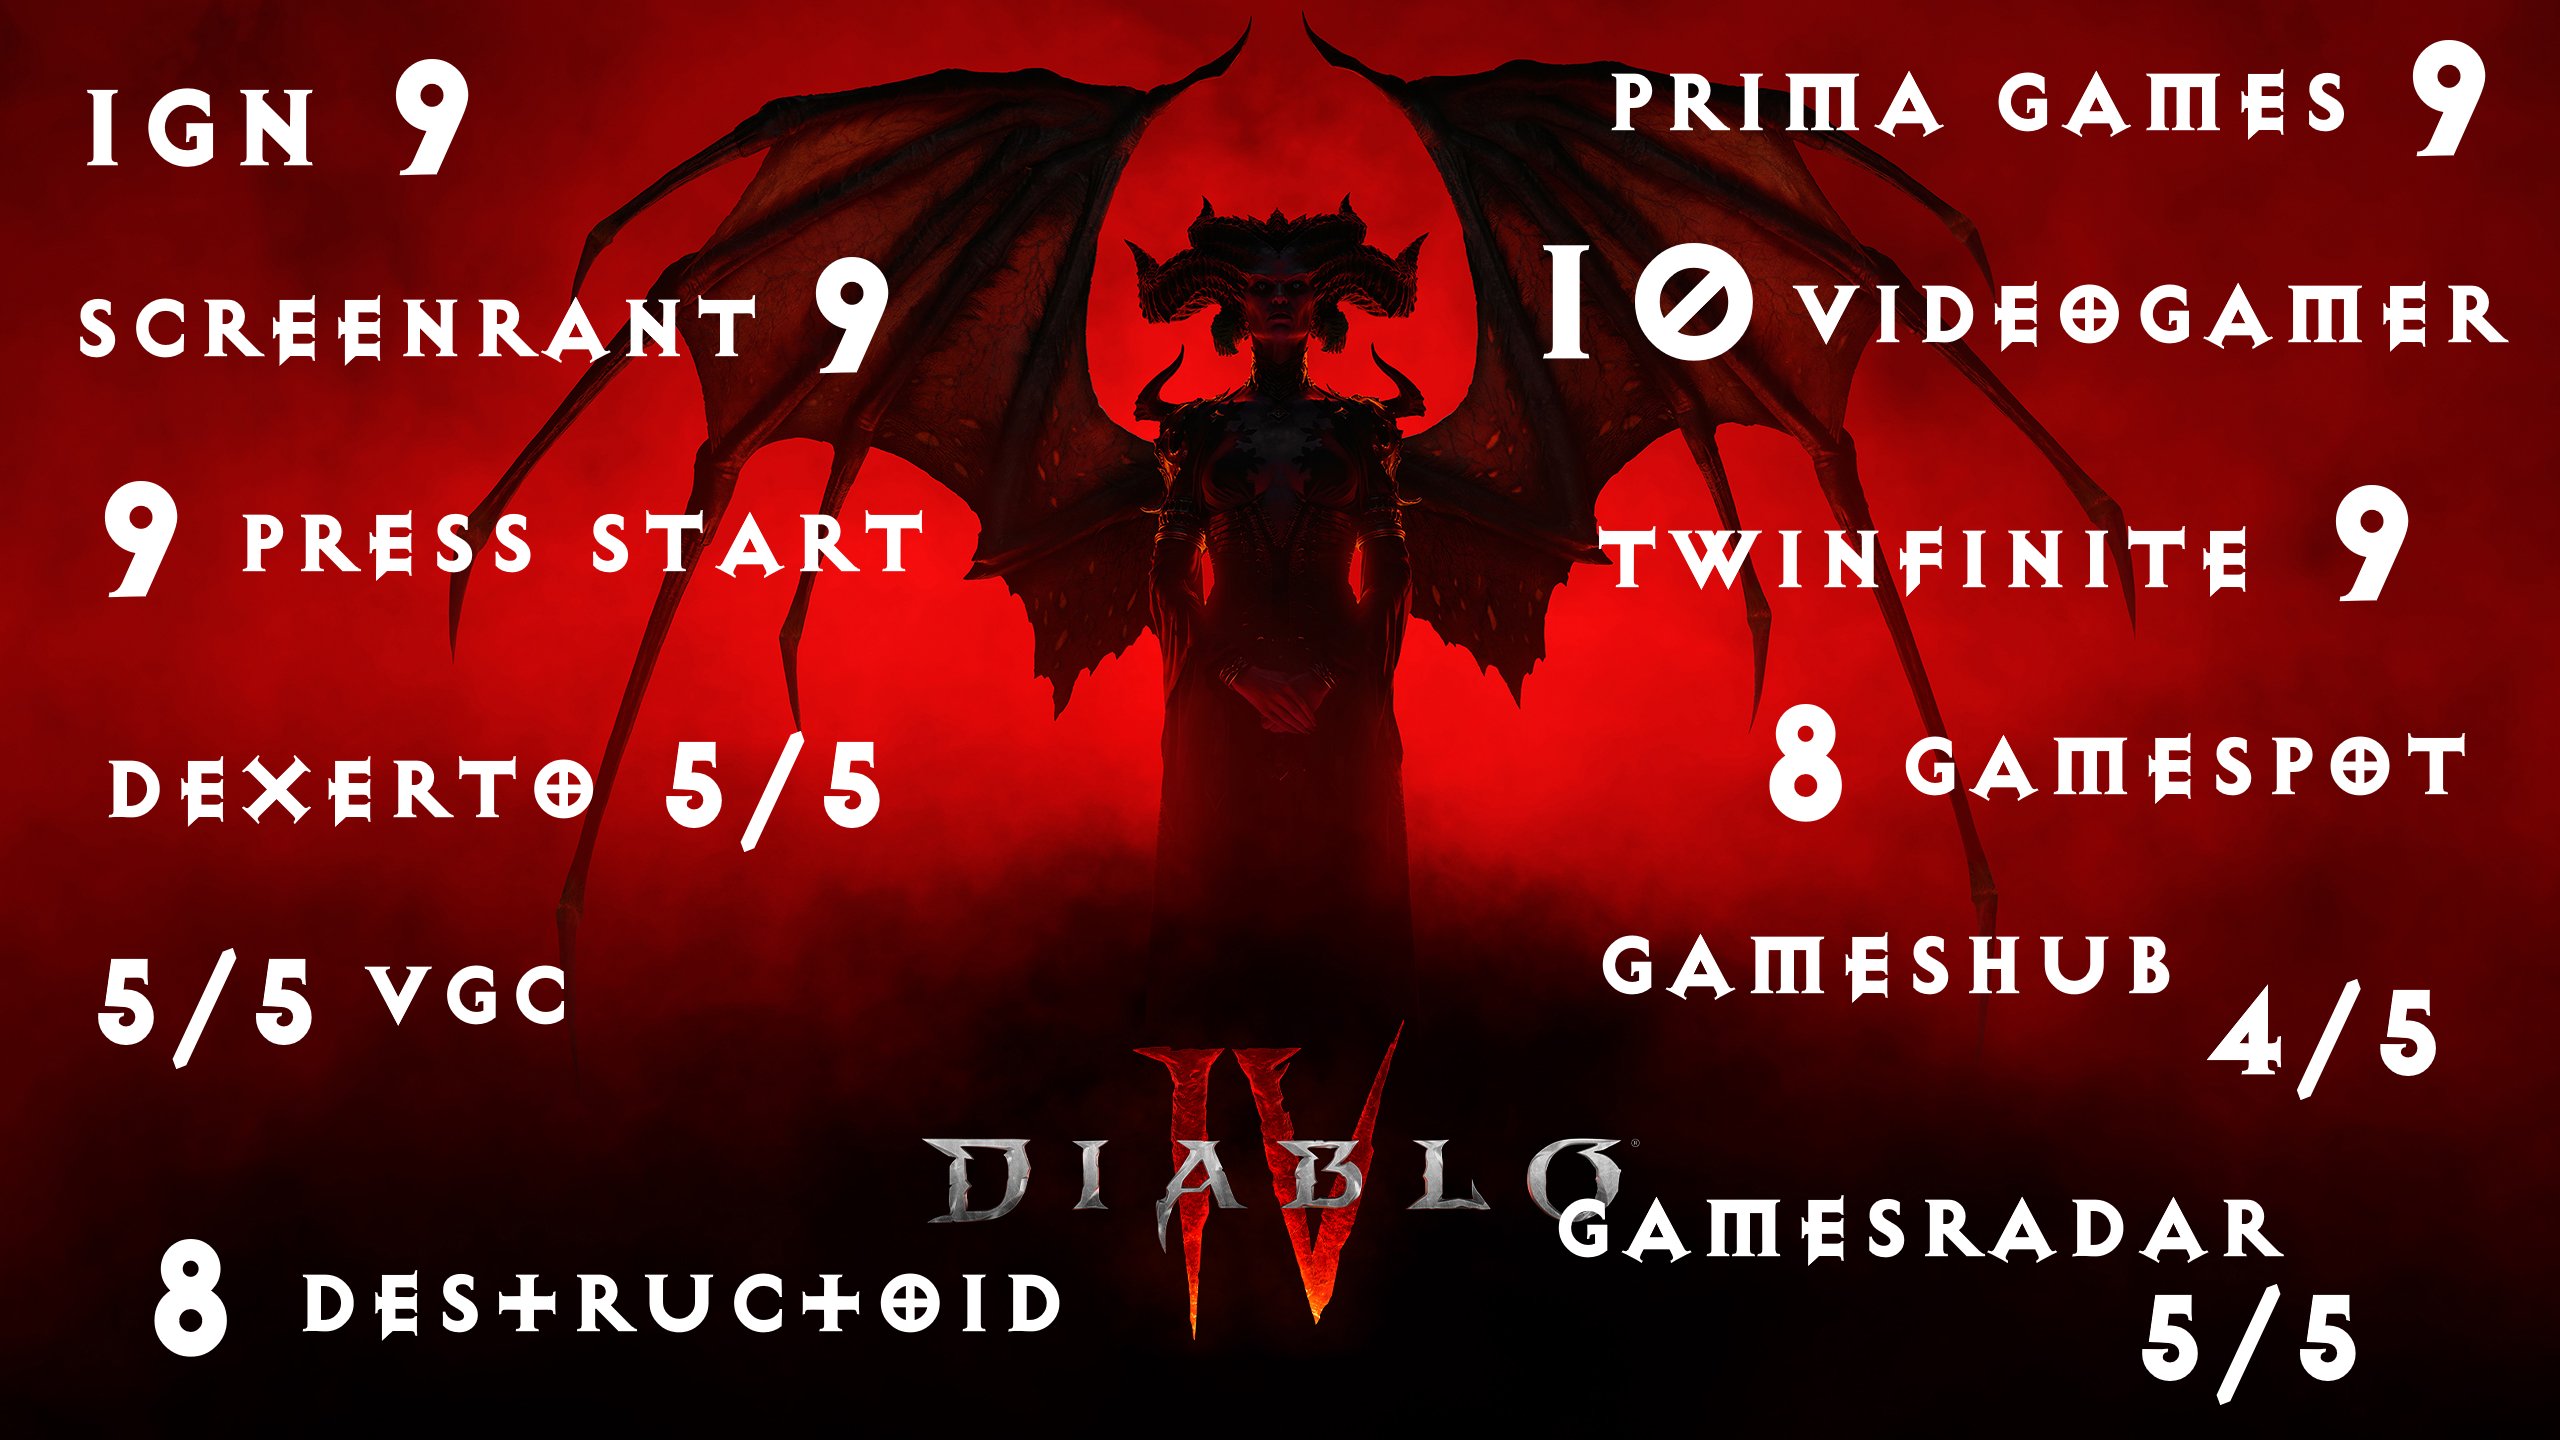 Diablo 4 review